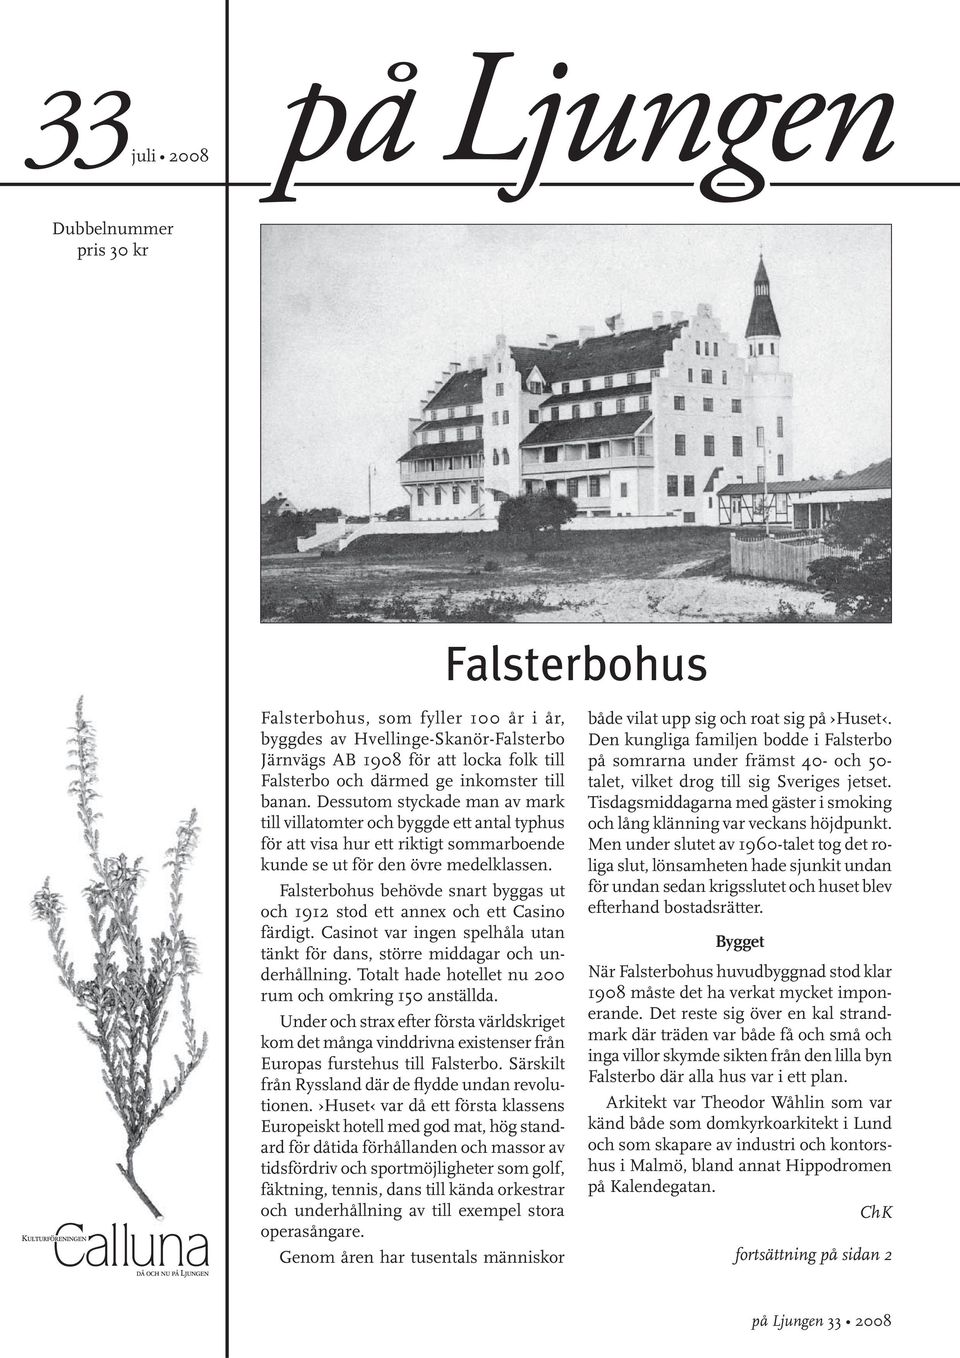 Falsterbohus behövde snart byggas ut och 1912 stod ett annex och ett Casino färdigt. Casinot var ingen spelhåla utan tänkt för dans, större middagar och underhållning.